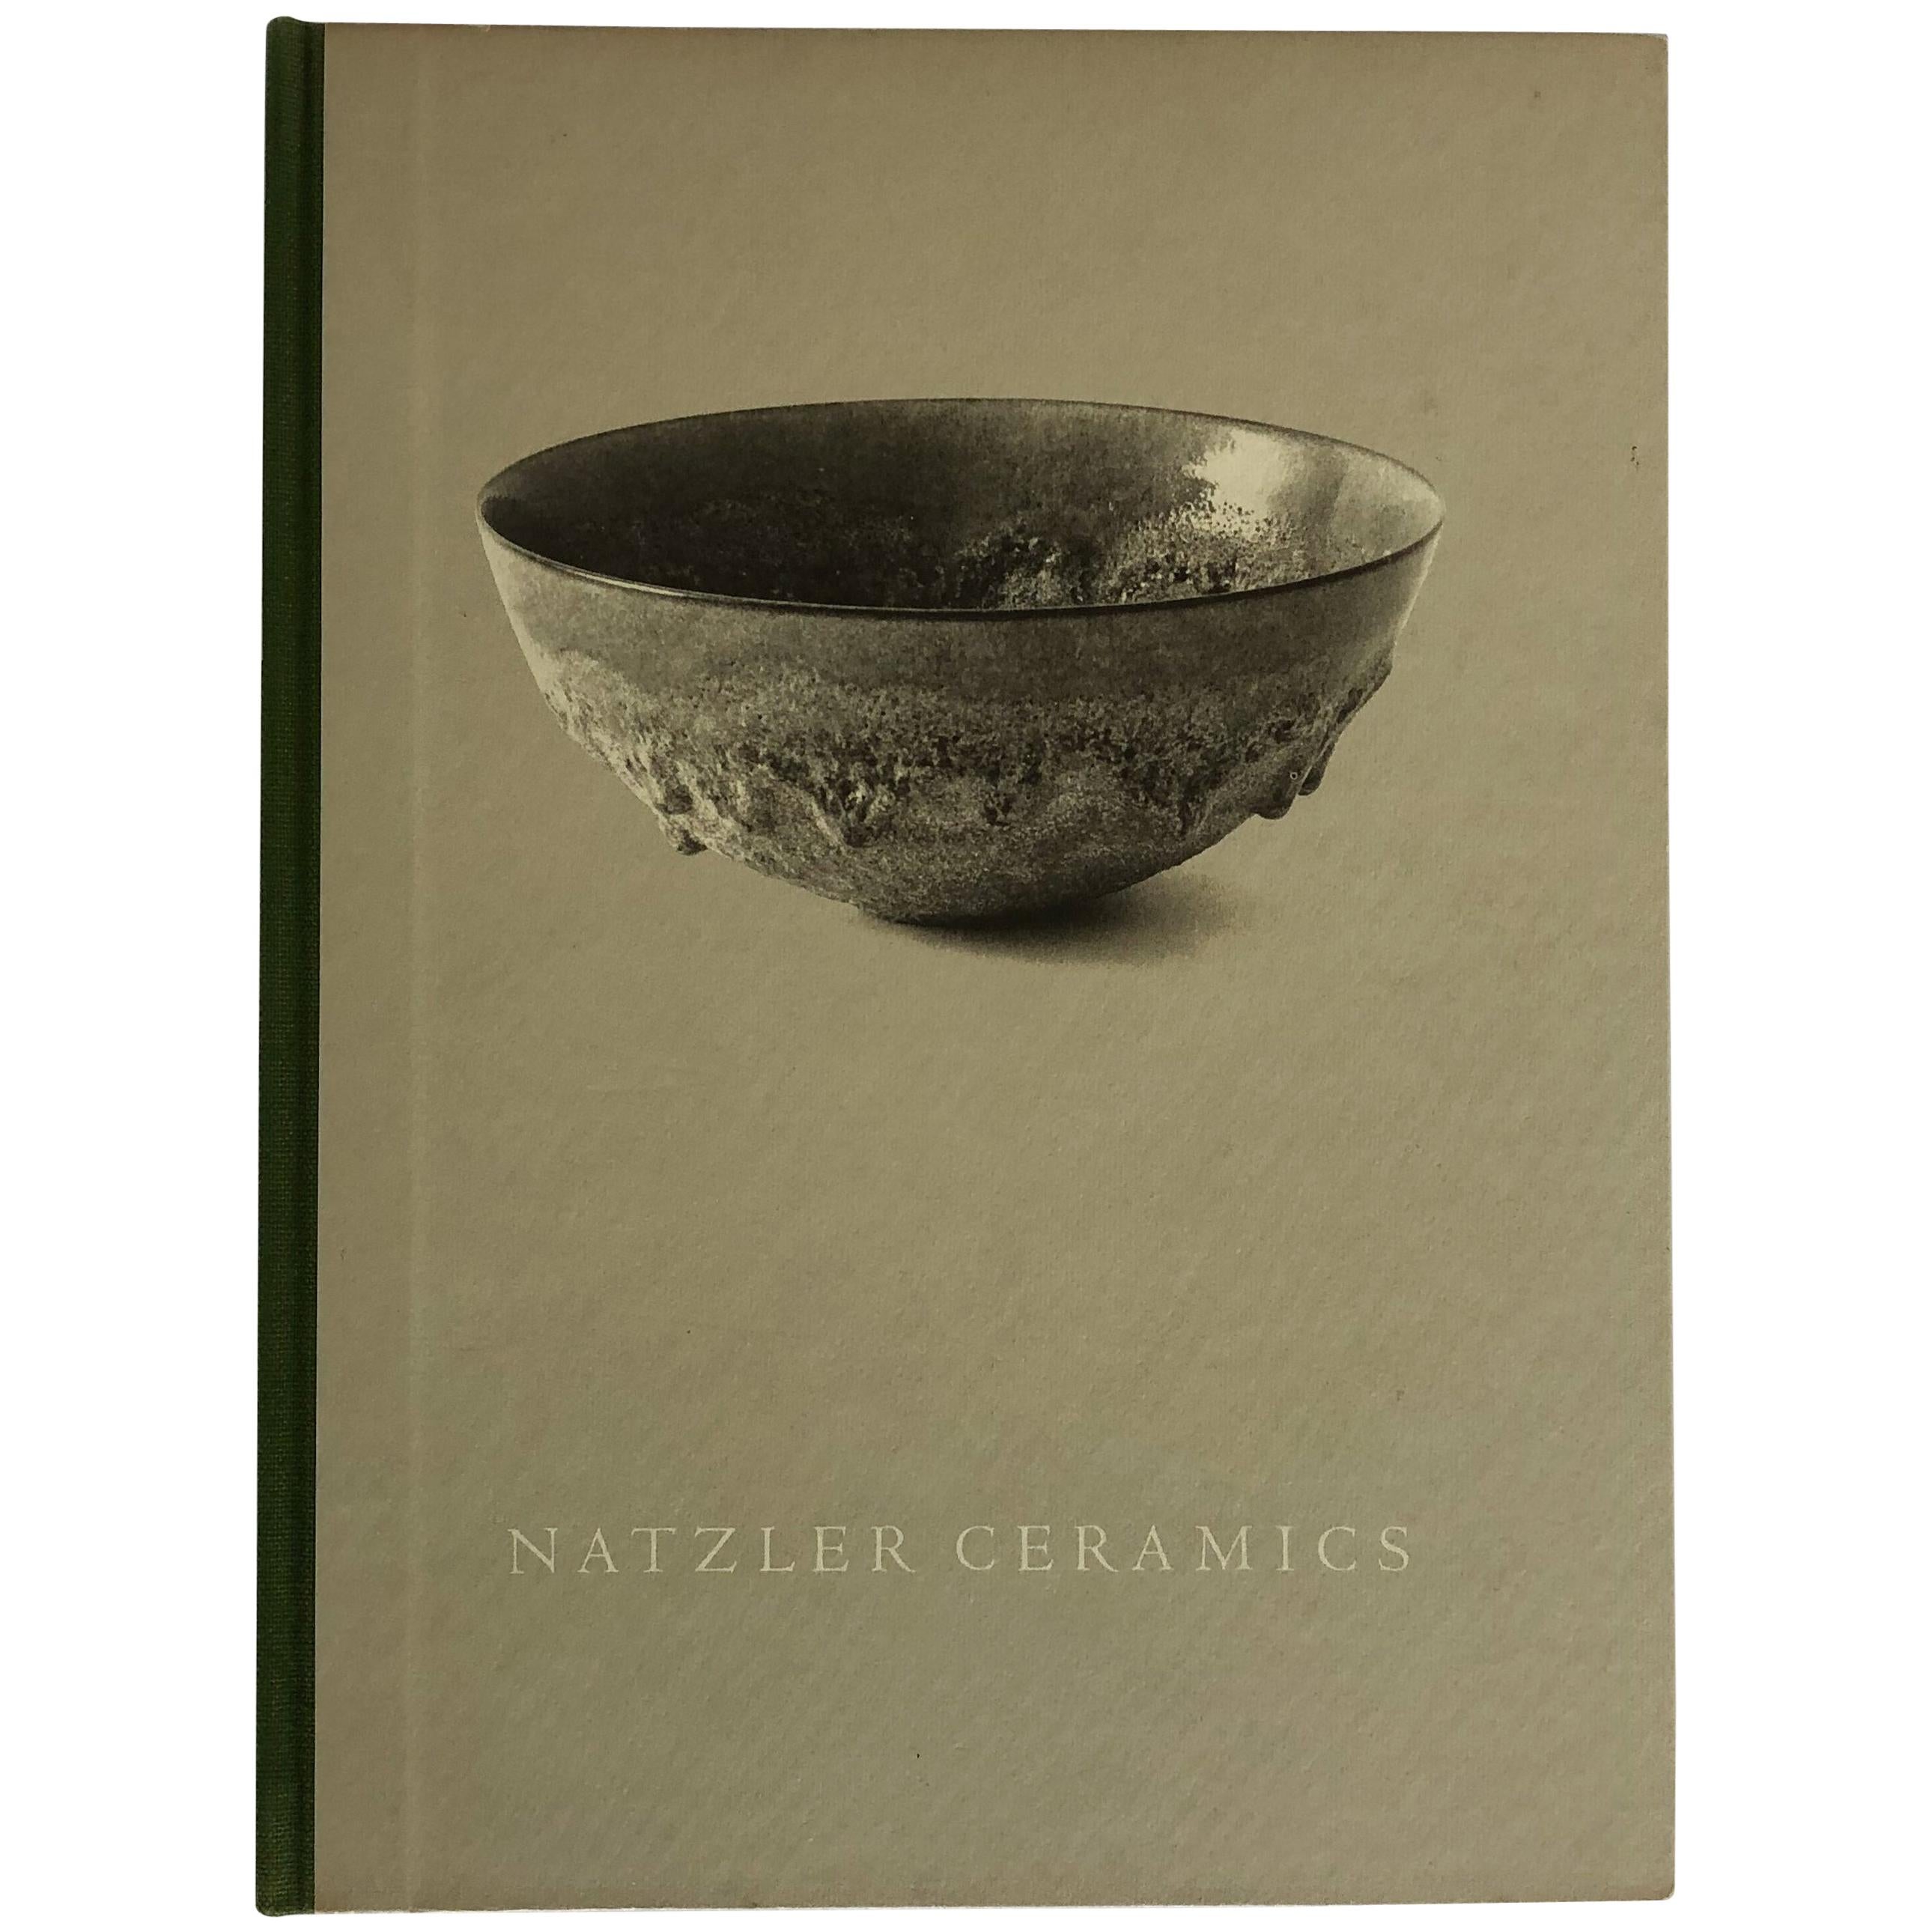 Natzler Ceramics a Signed Presentation Copy